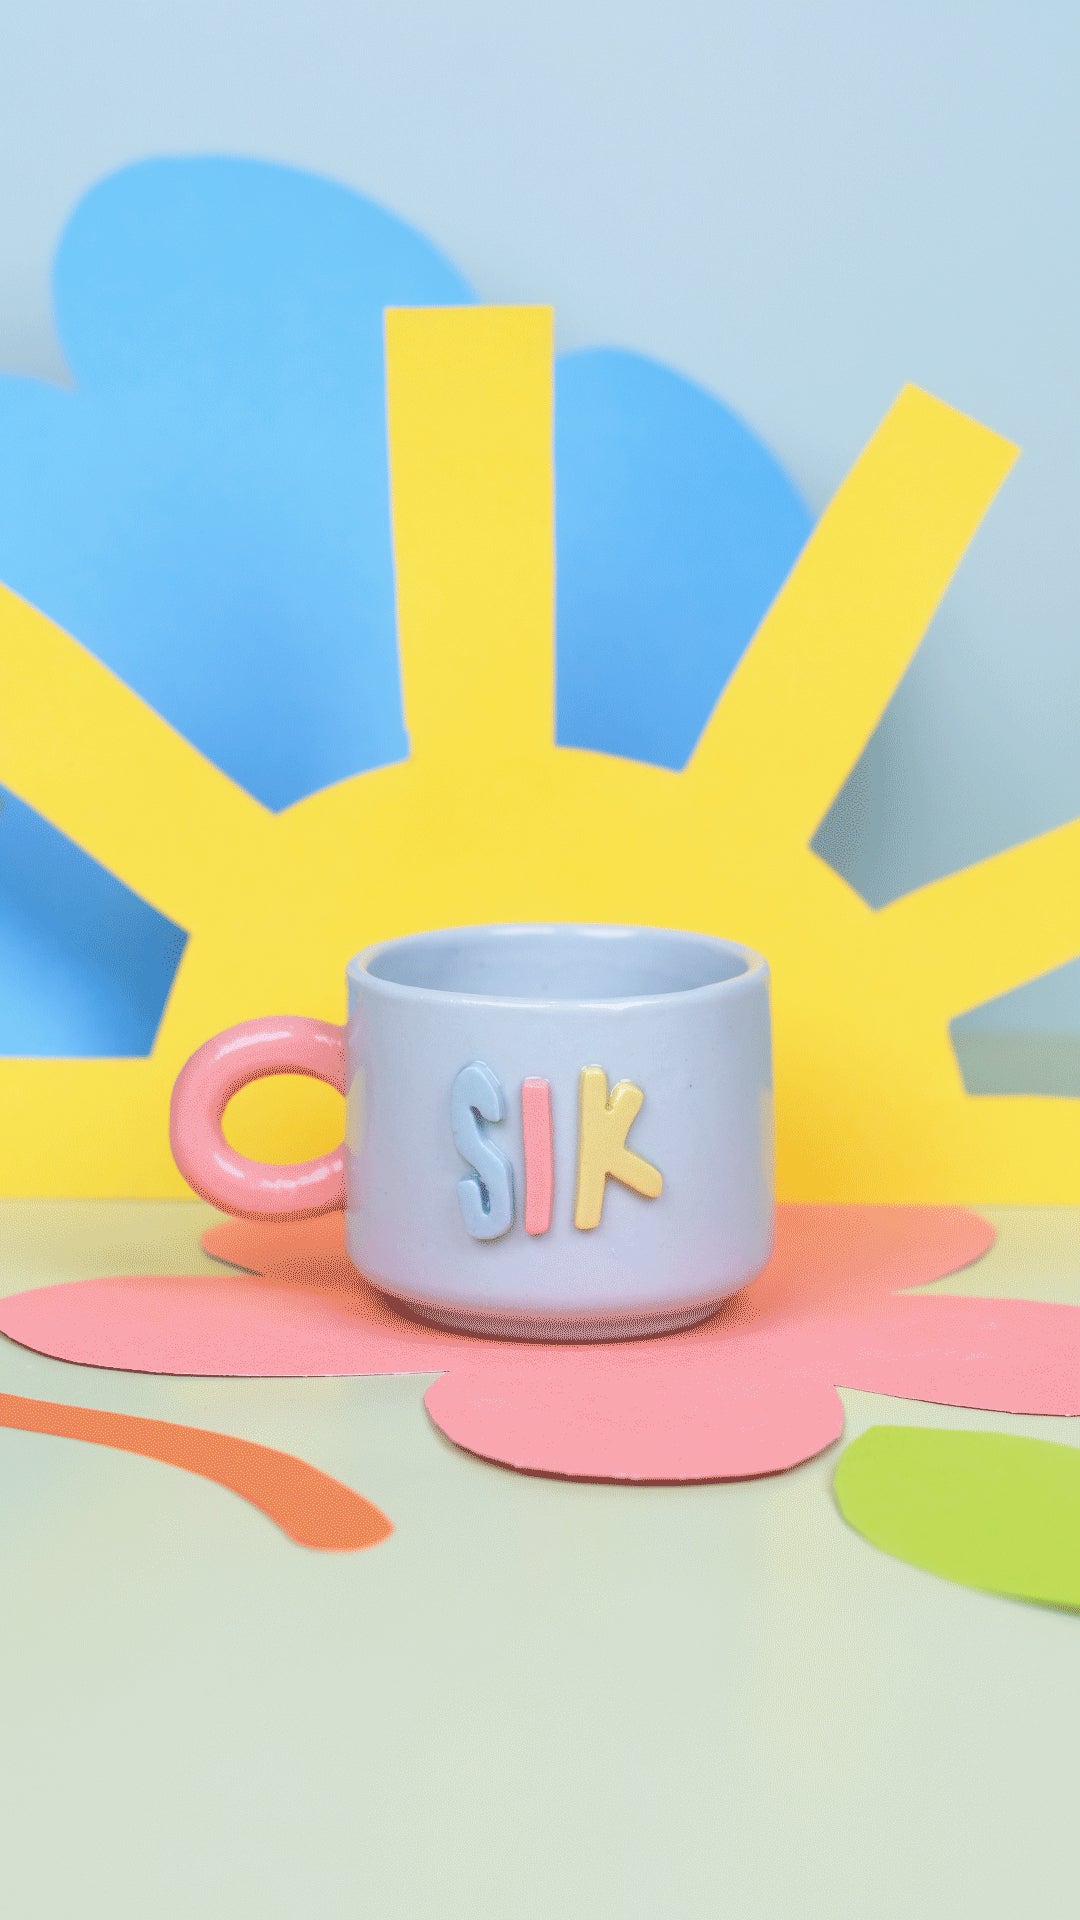 Sik - Teacup mug